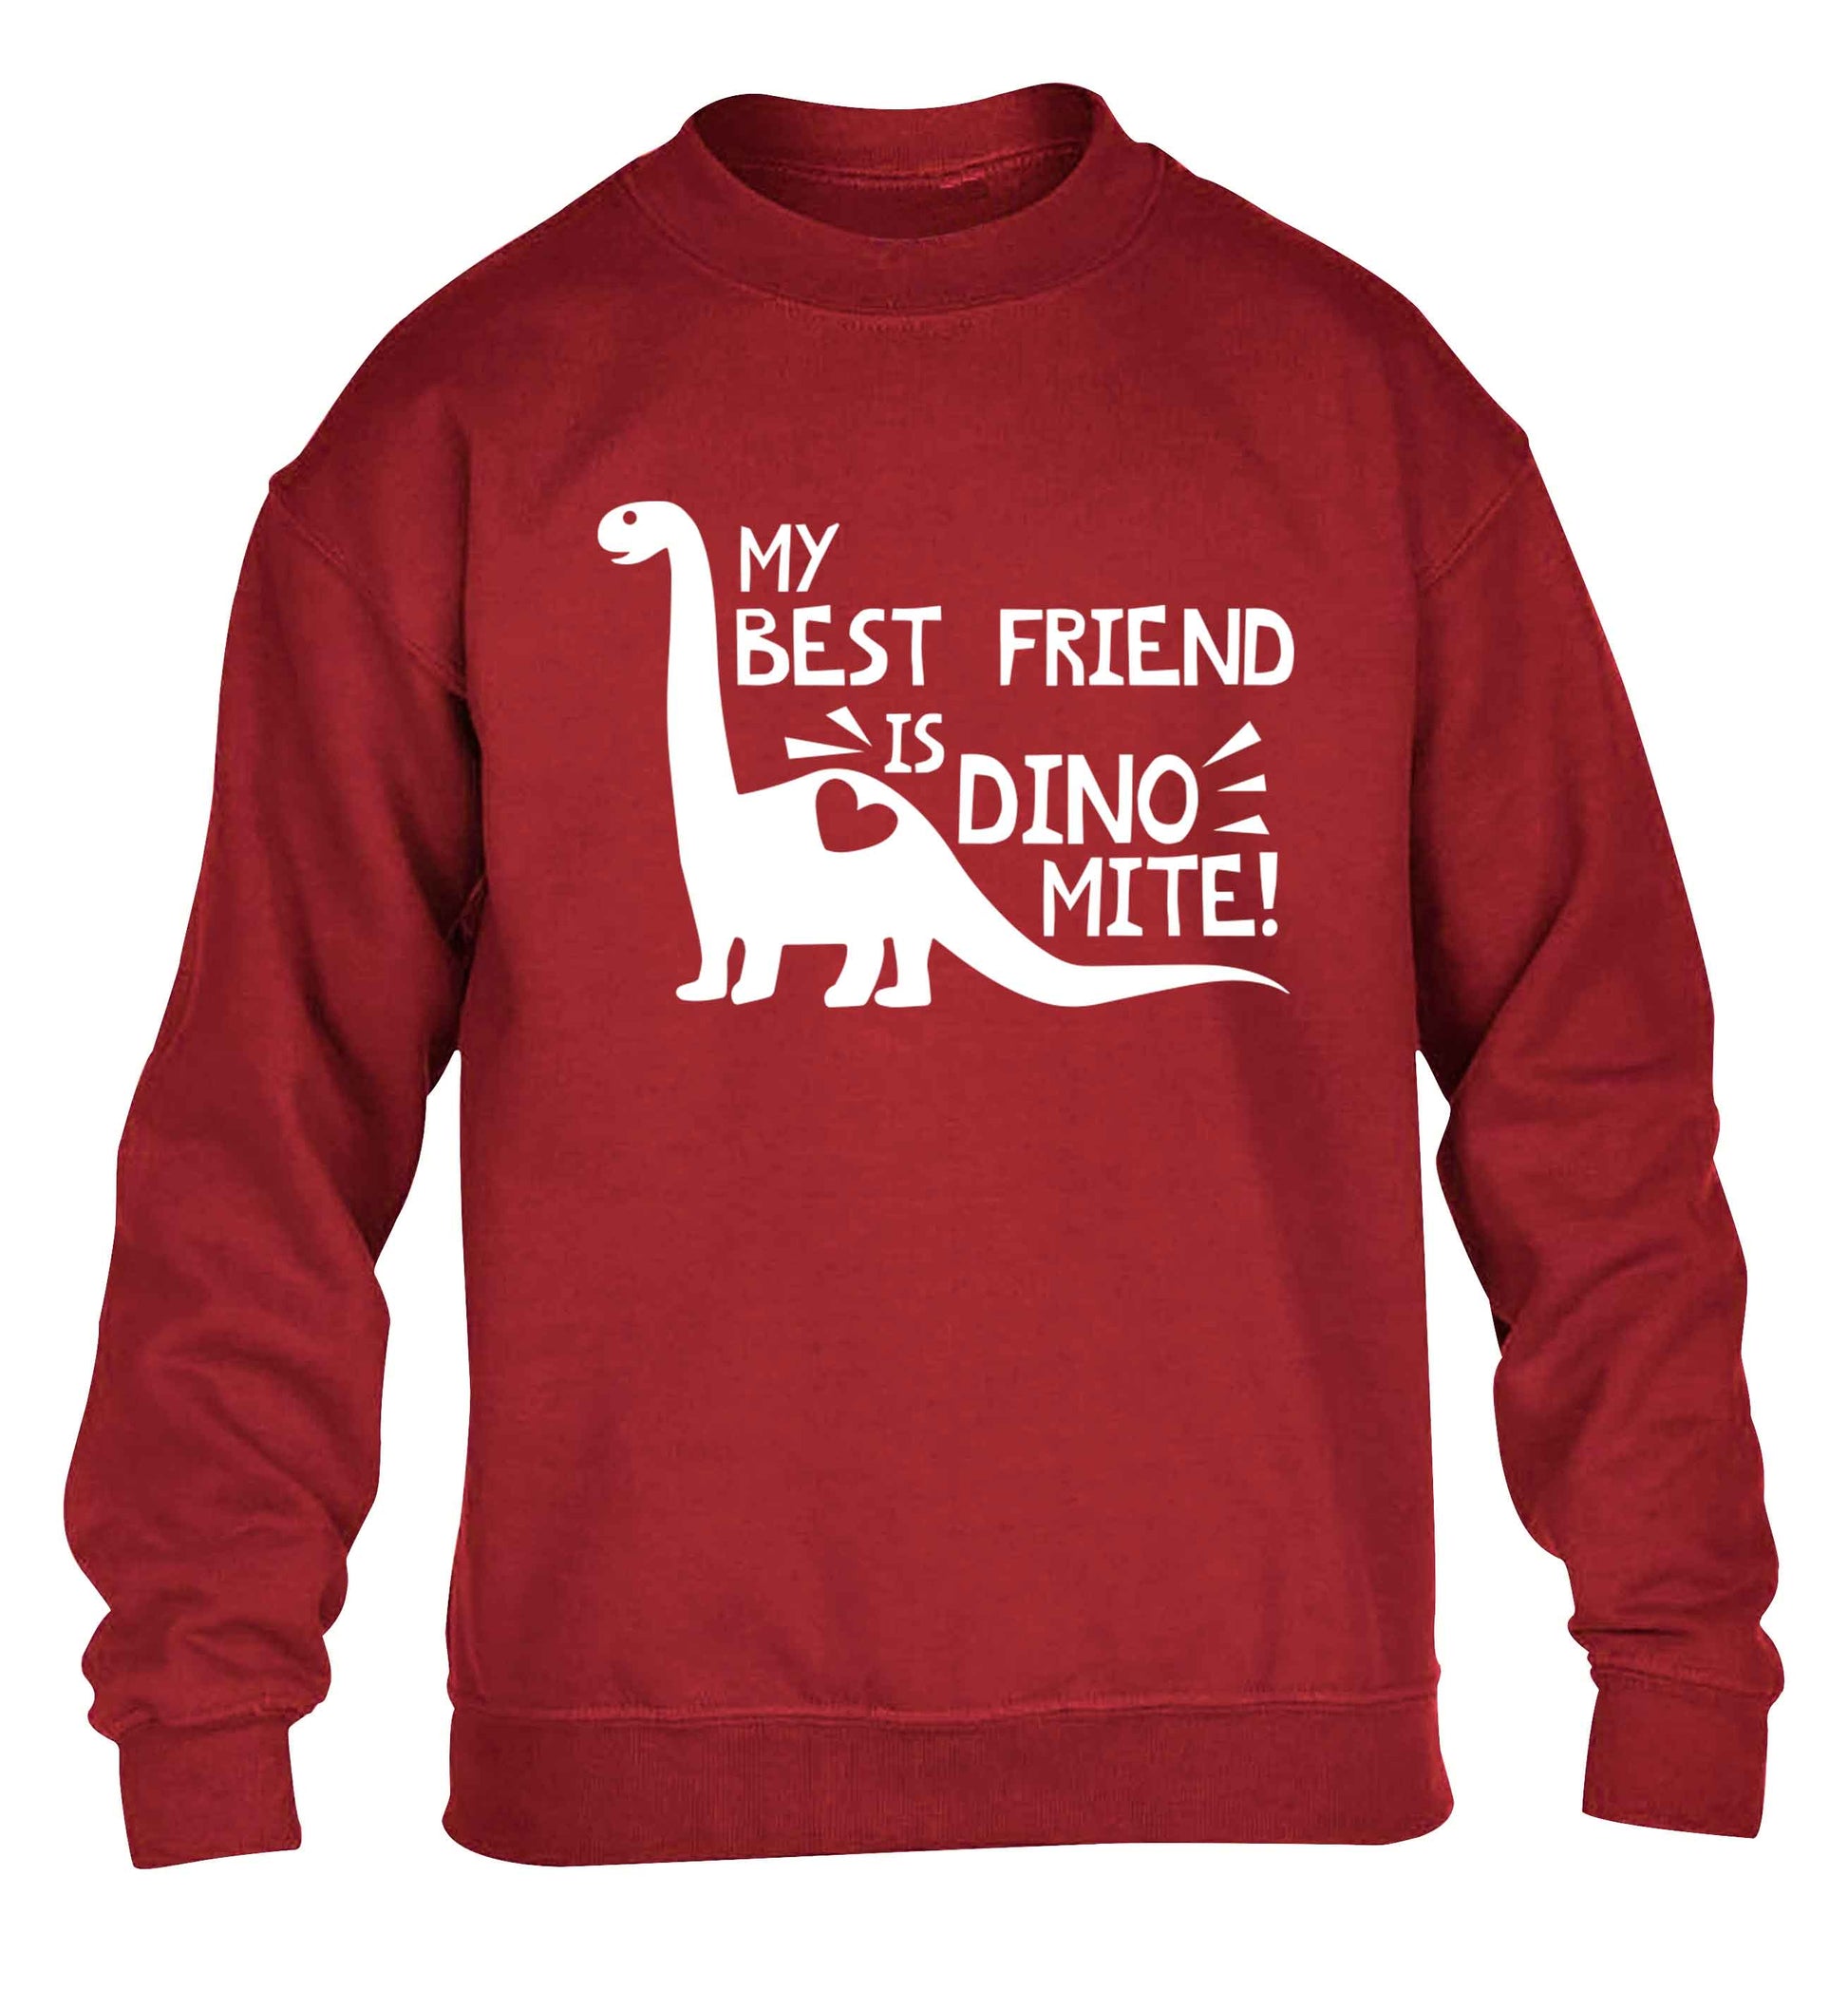 My best friend is dinomite! children's grey sweater 12-13 Years